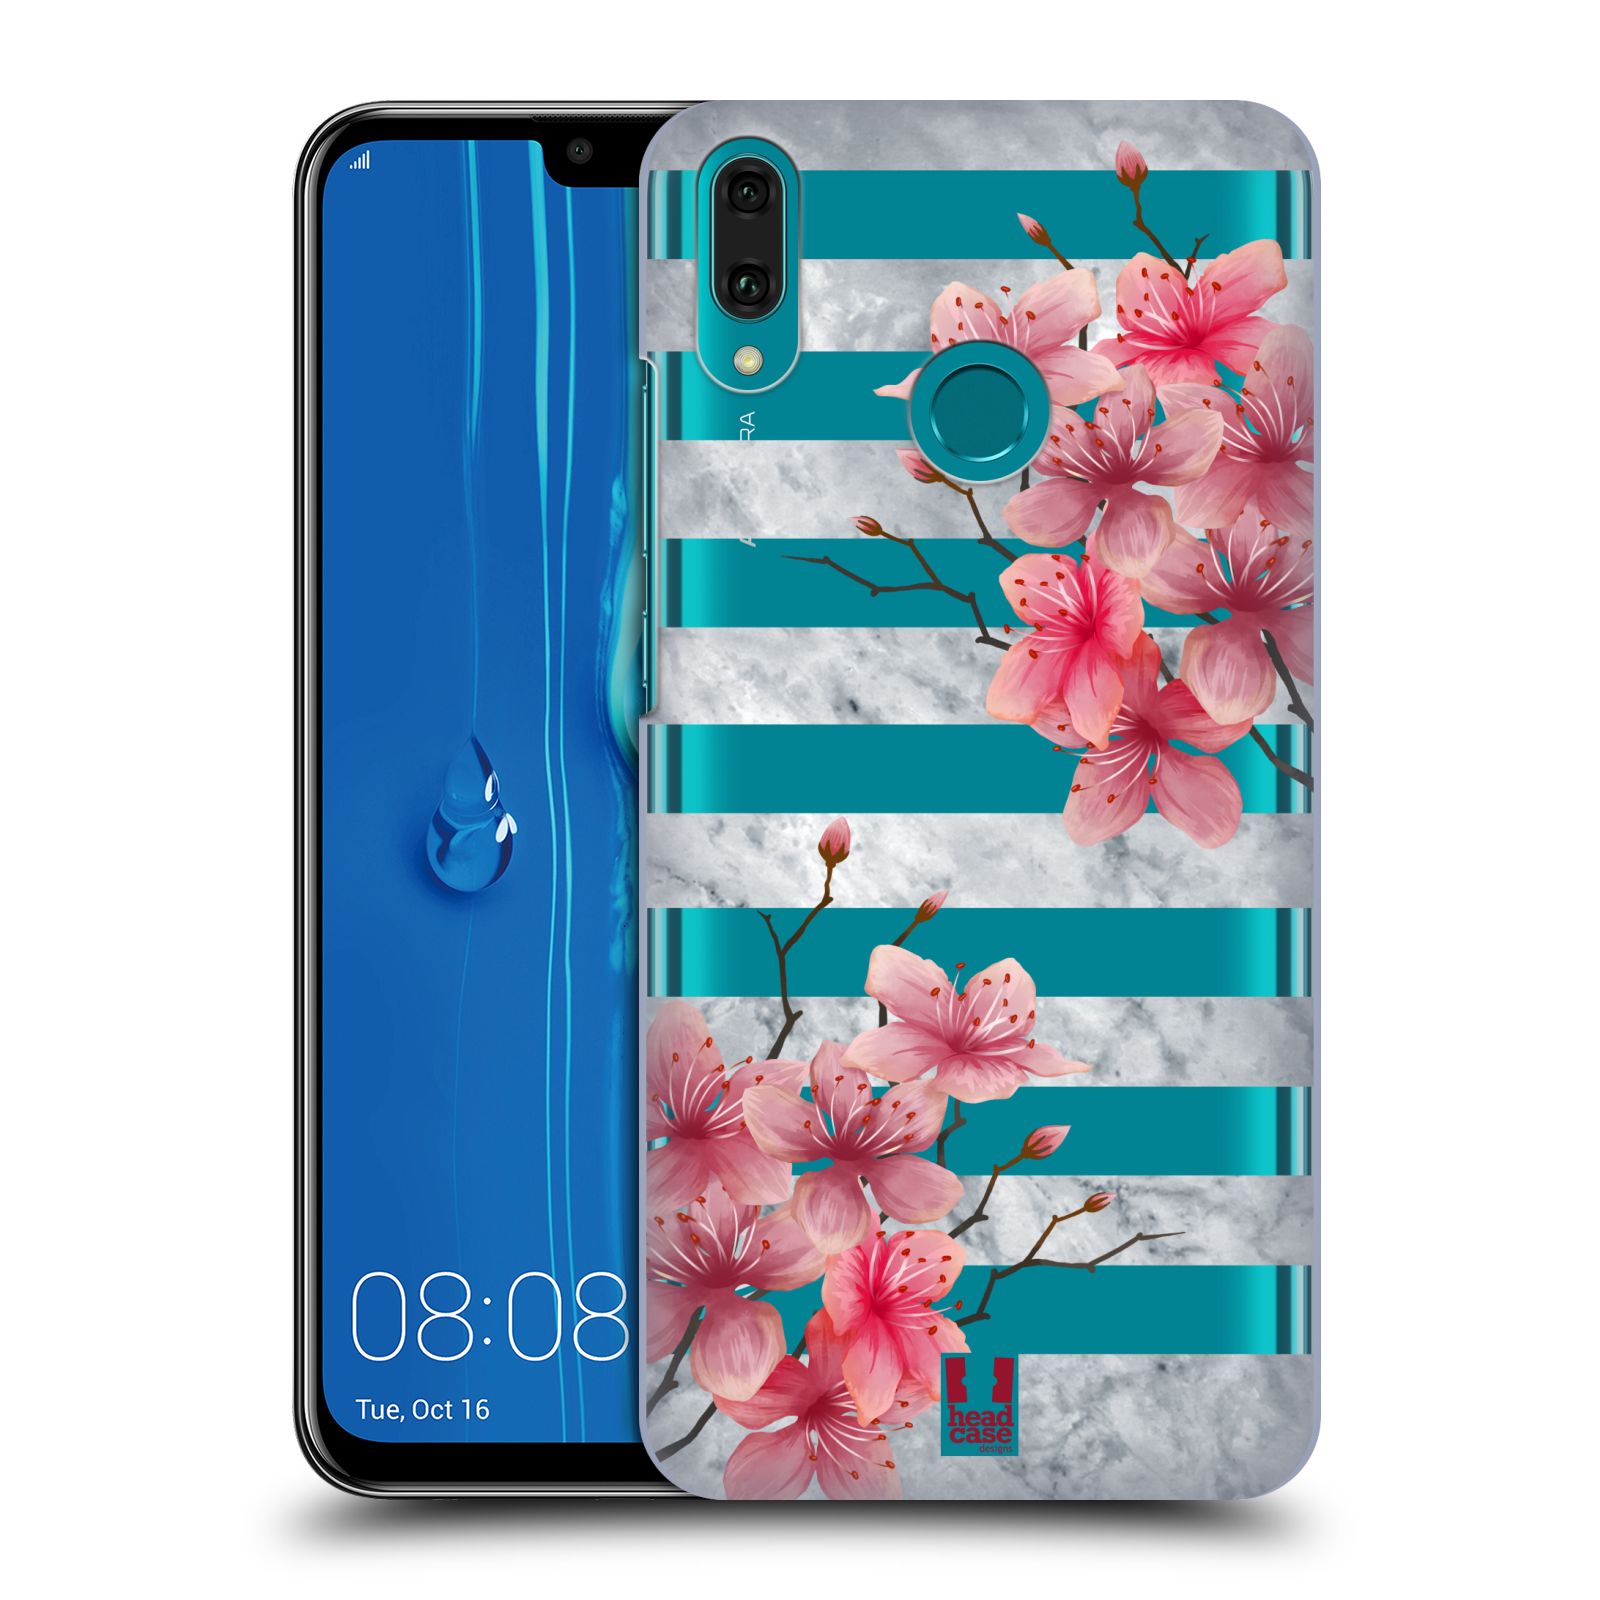 Pouzdro na mobil Huawei Y9 2019 - HEAD CASE - růžové květy v rozkvětu a mramor